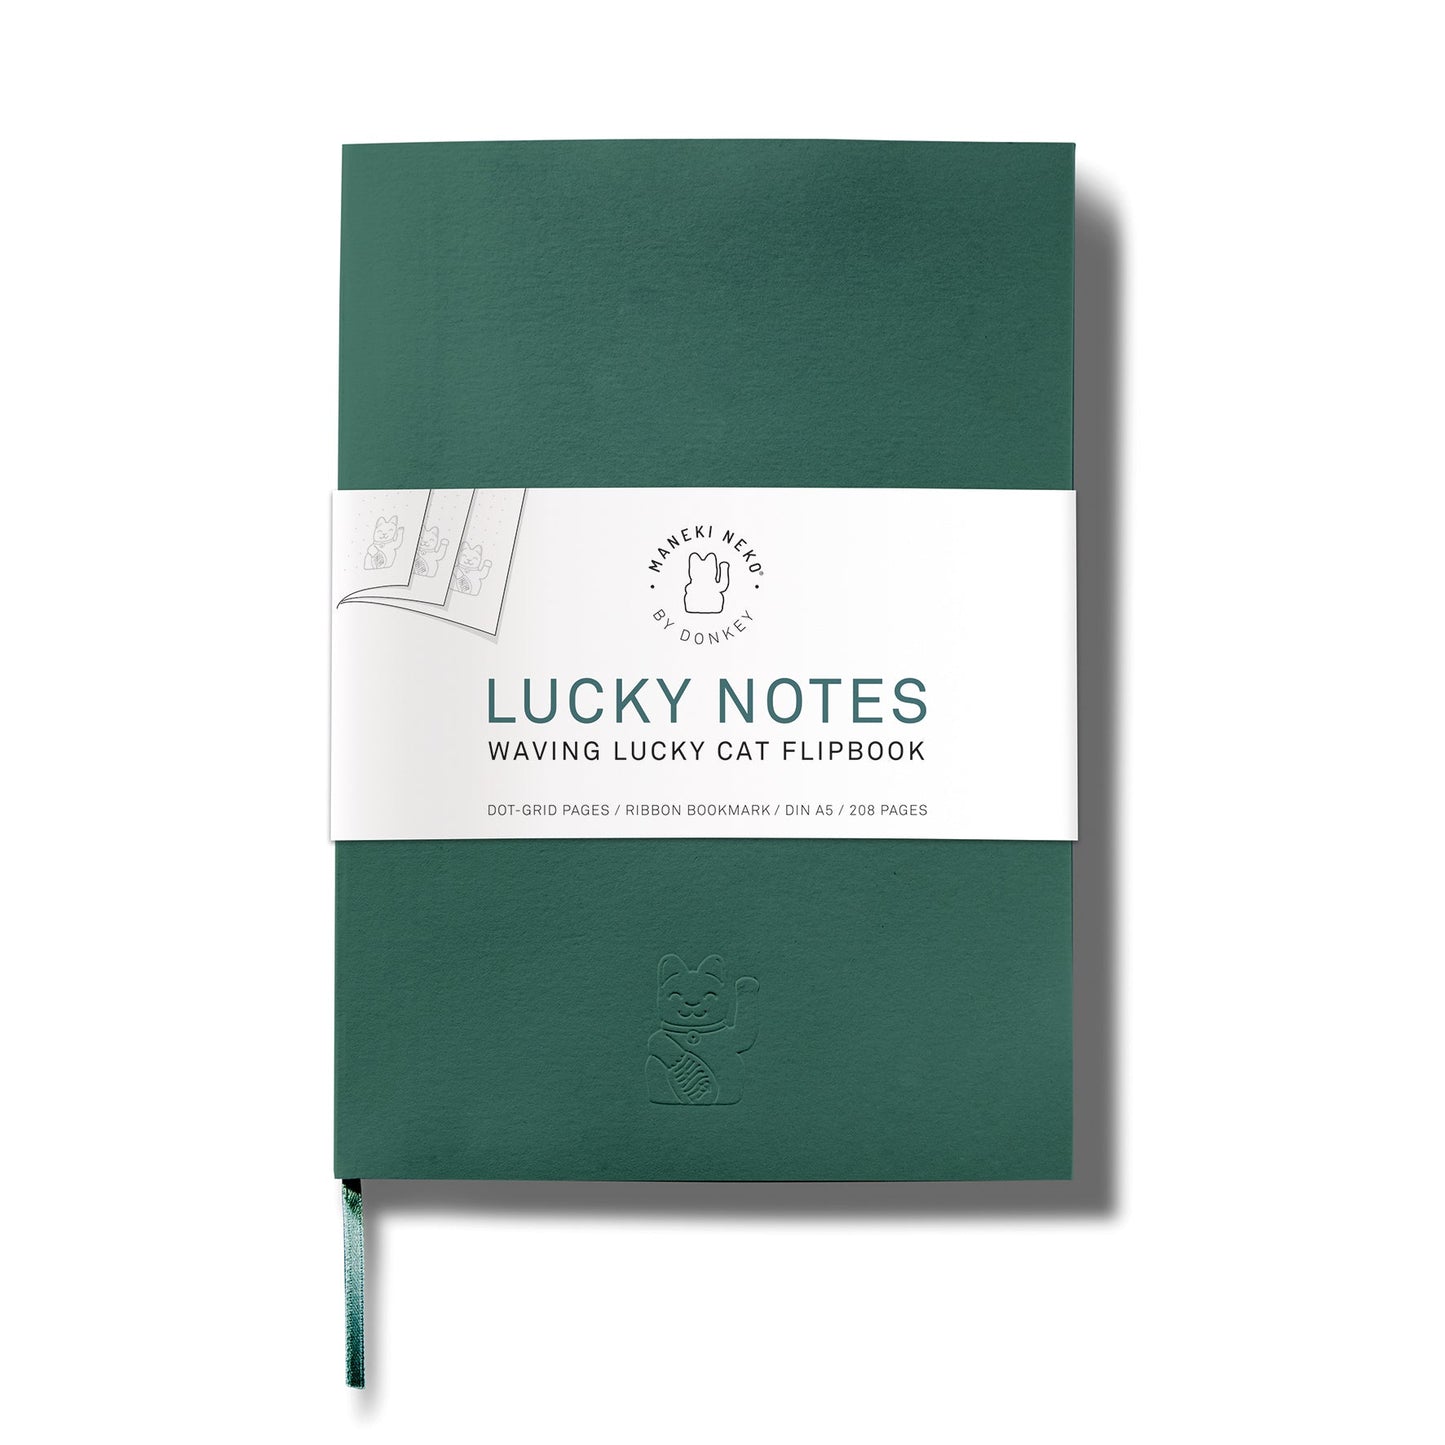 Cuaderno de chat de suerte verde